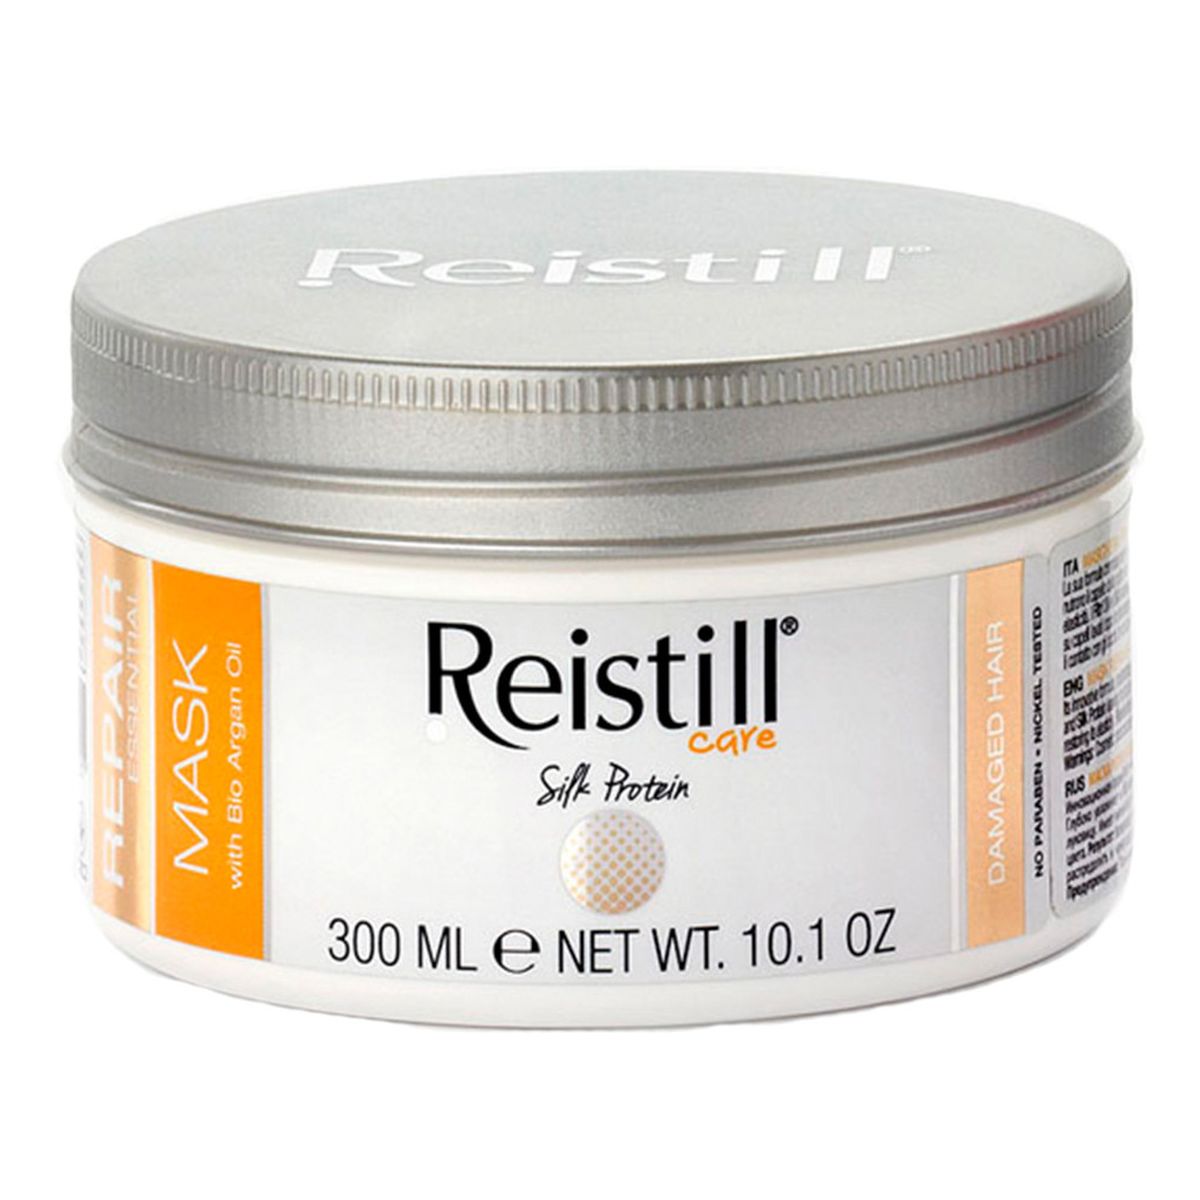 Reistill Silk Protein Maska do włosów 300ml